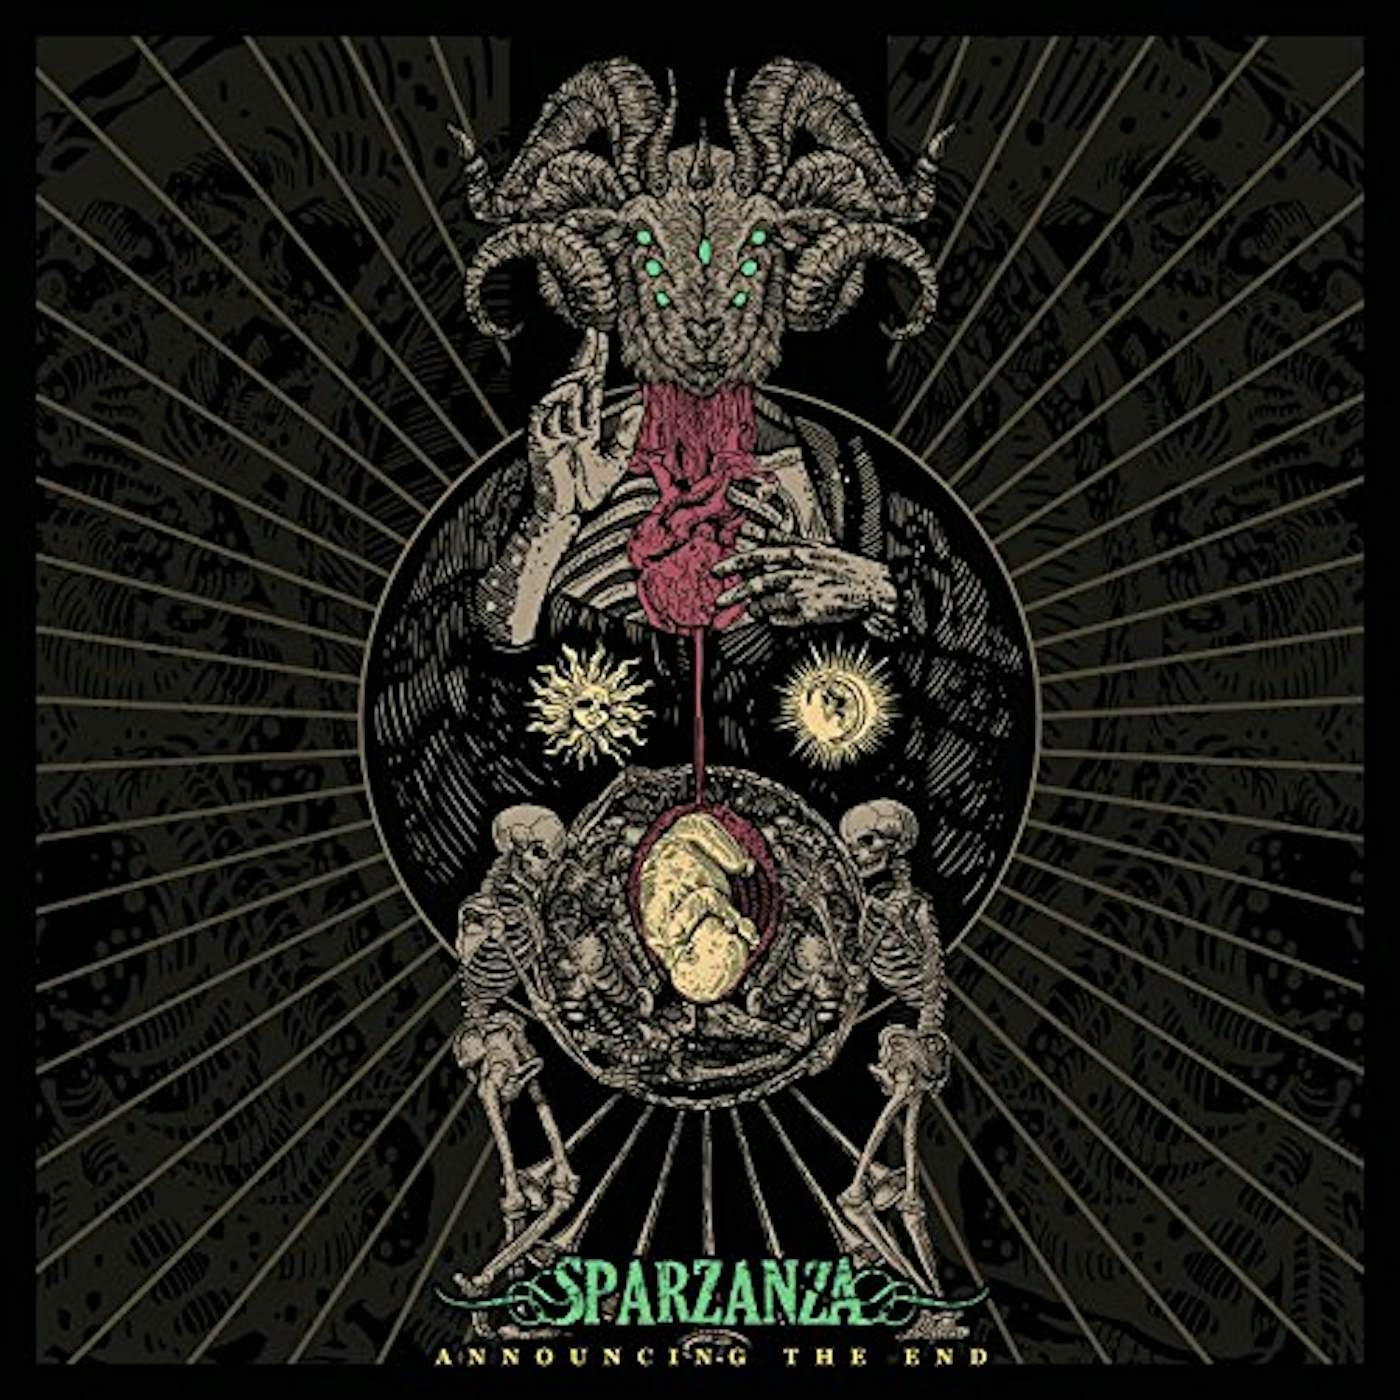 Sparzanza Announcing The End Vinyl Record